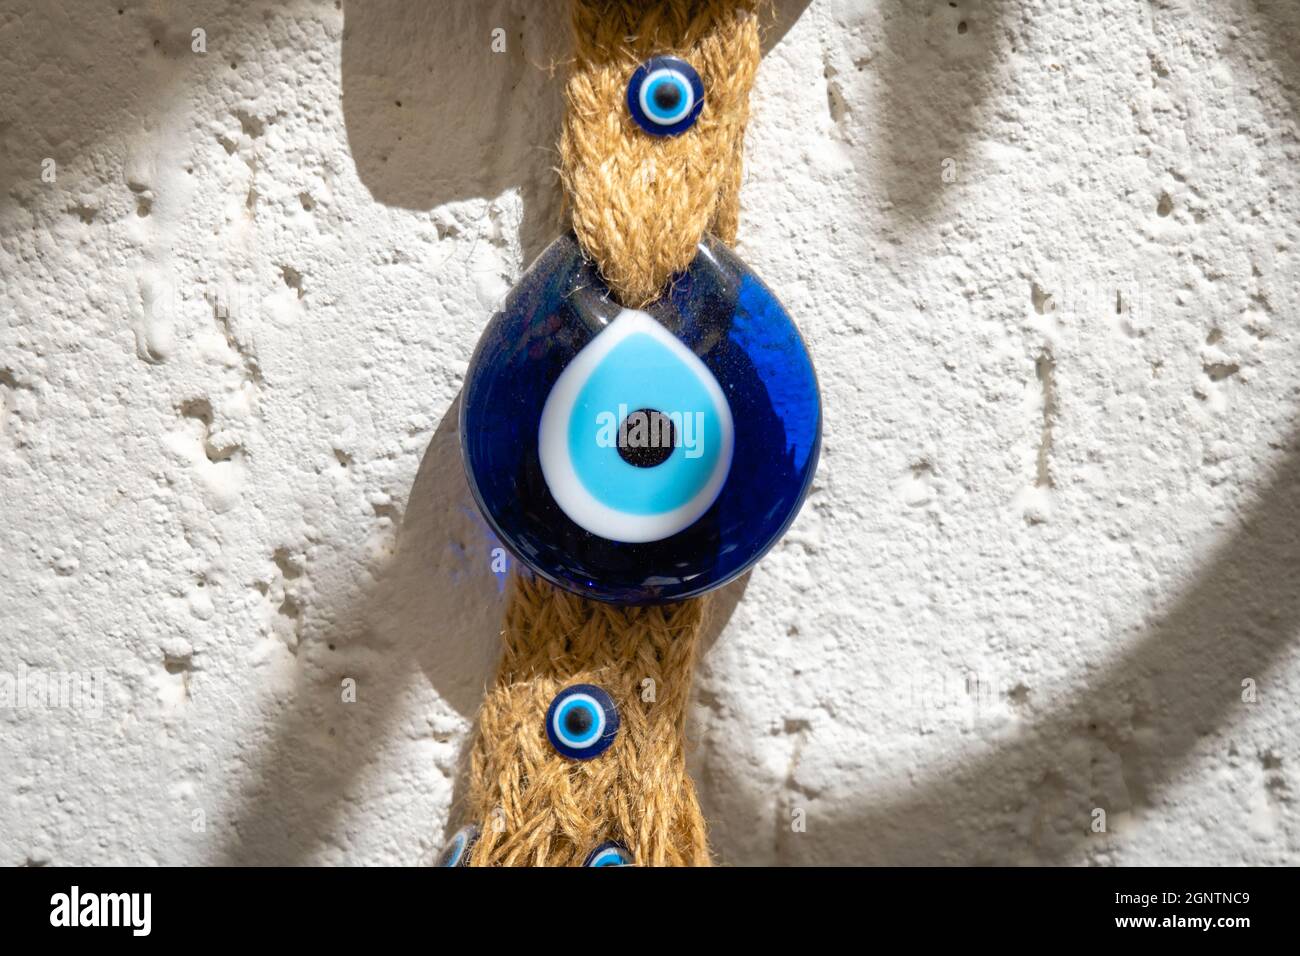 Nazar, das böse Auge traditionelle türkische Amulette, die in der Türkei  für Einheimische und Touristen als Souvenir und Geschenk beliebt sind  Stockfotografie - Alamy